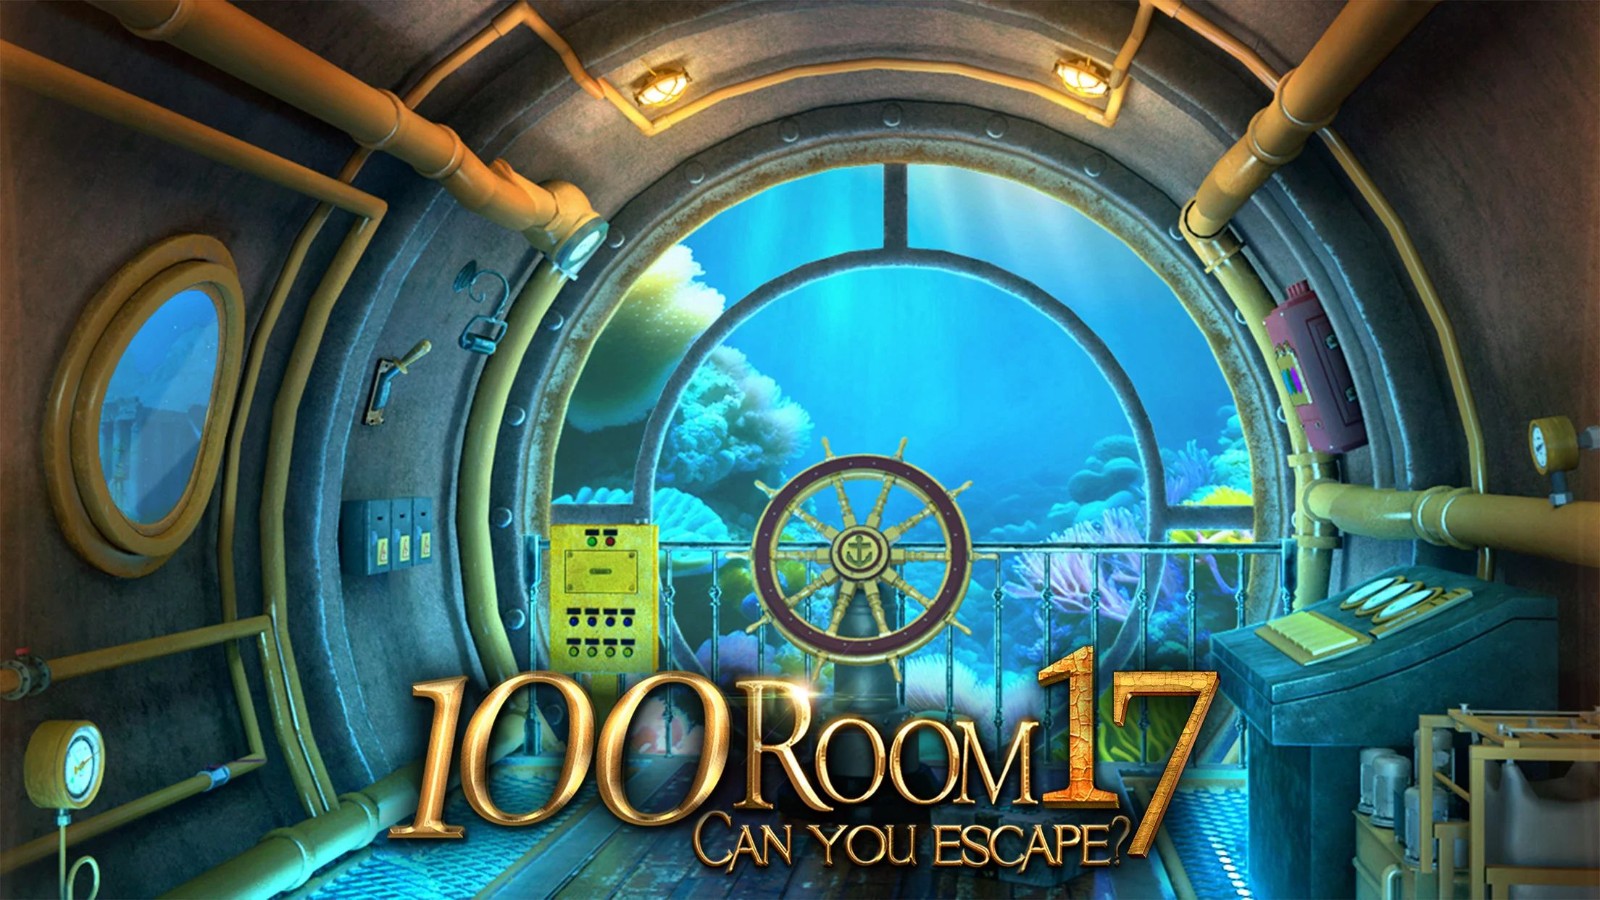 密室逃脱挑战100个房间17